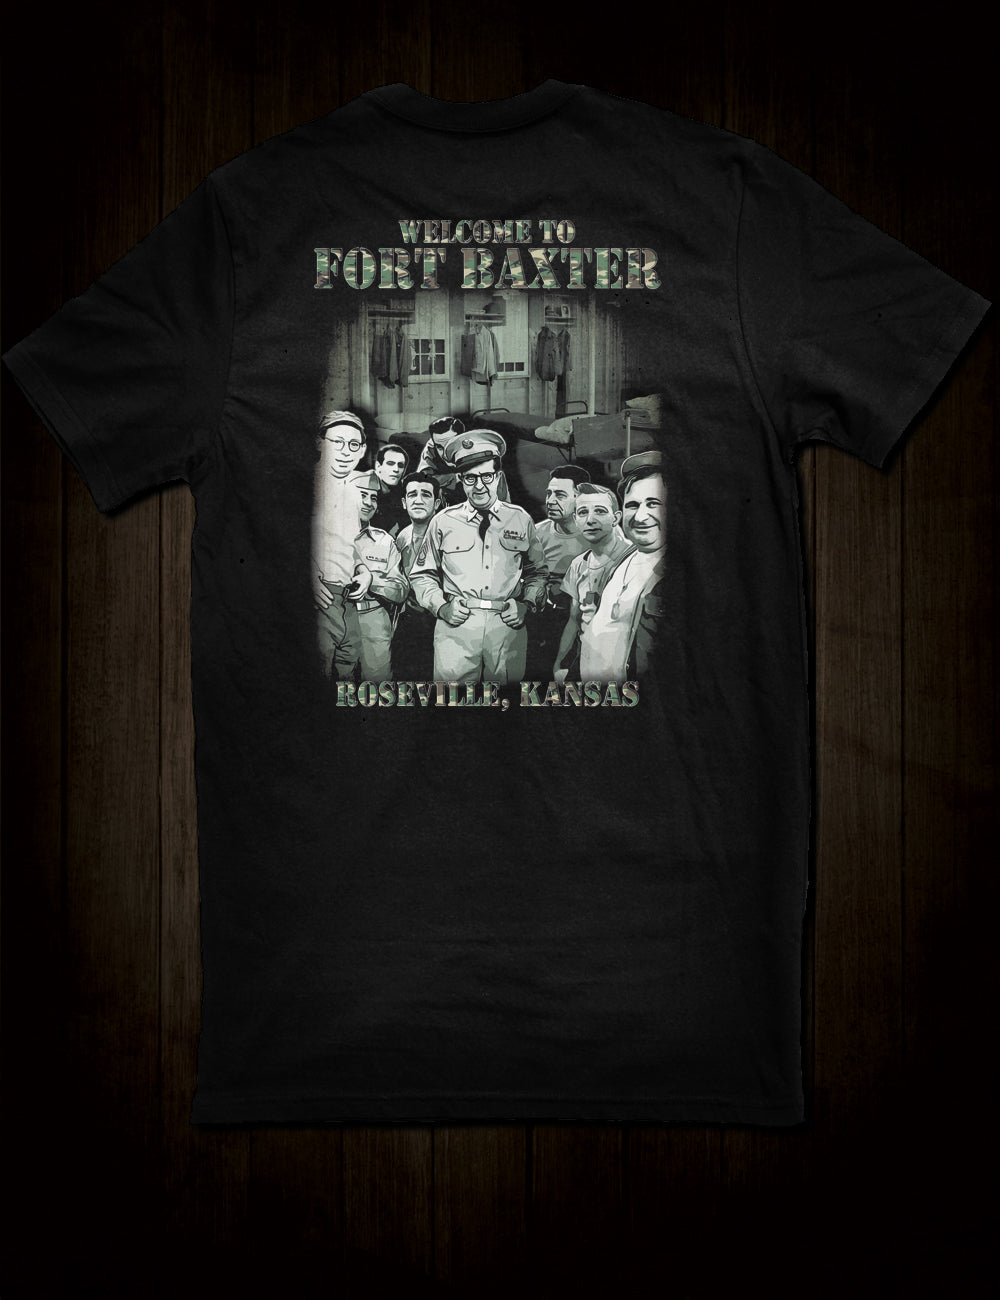 Phil Silvers - Sgt. Bilko T-Shirt Fort Baxter Roseville Kansas